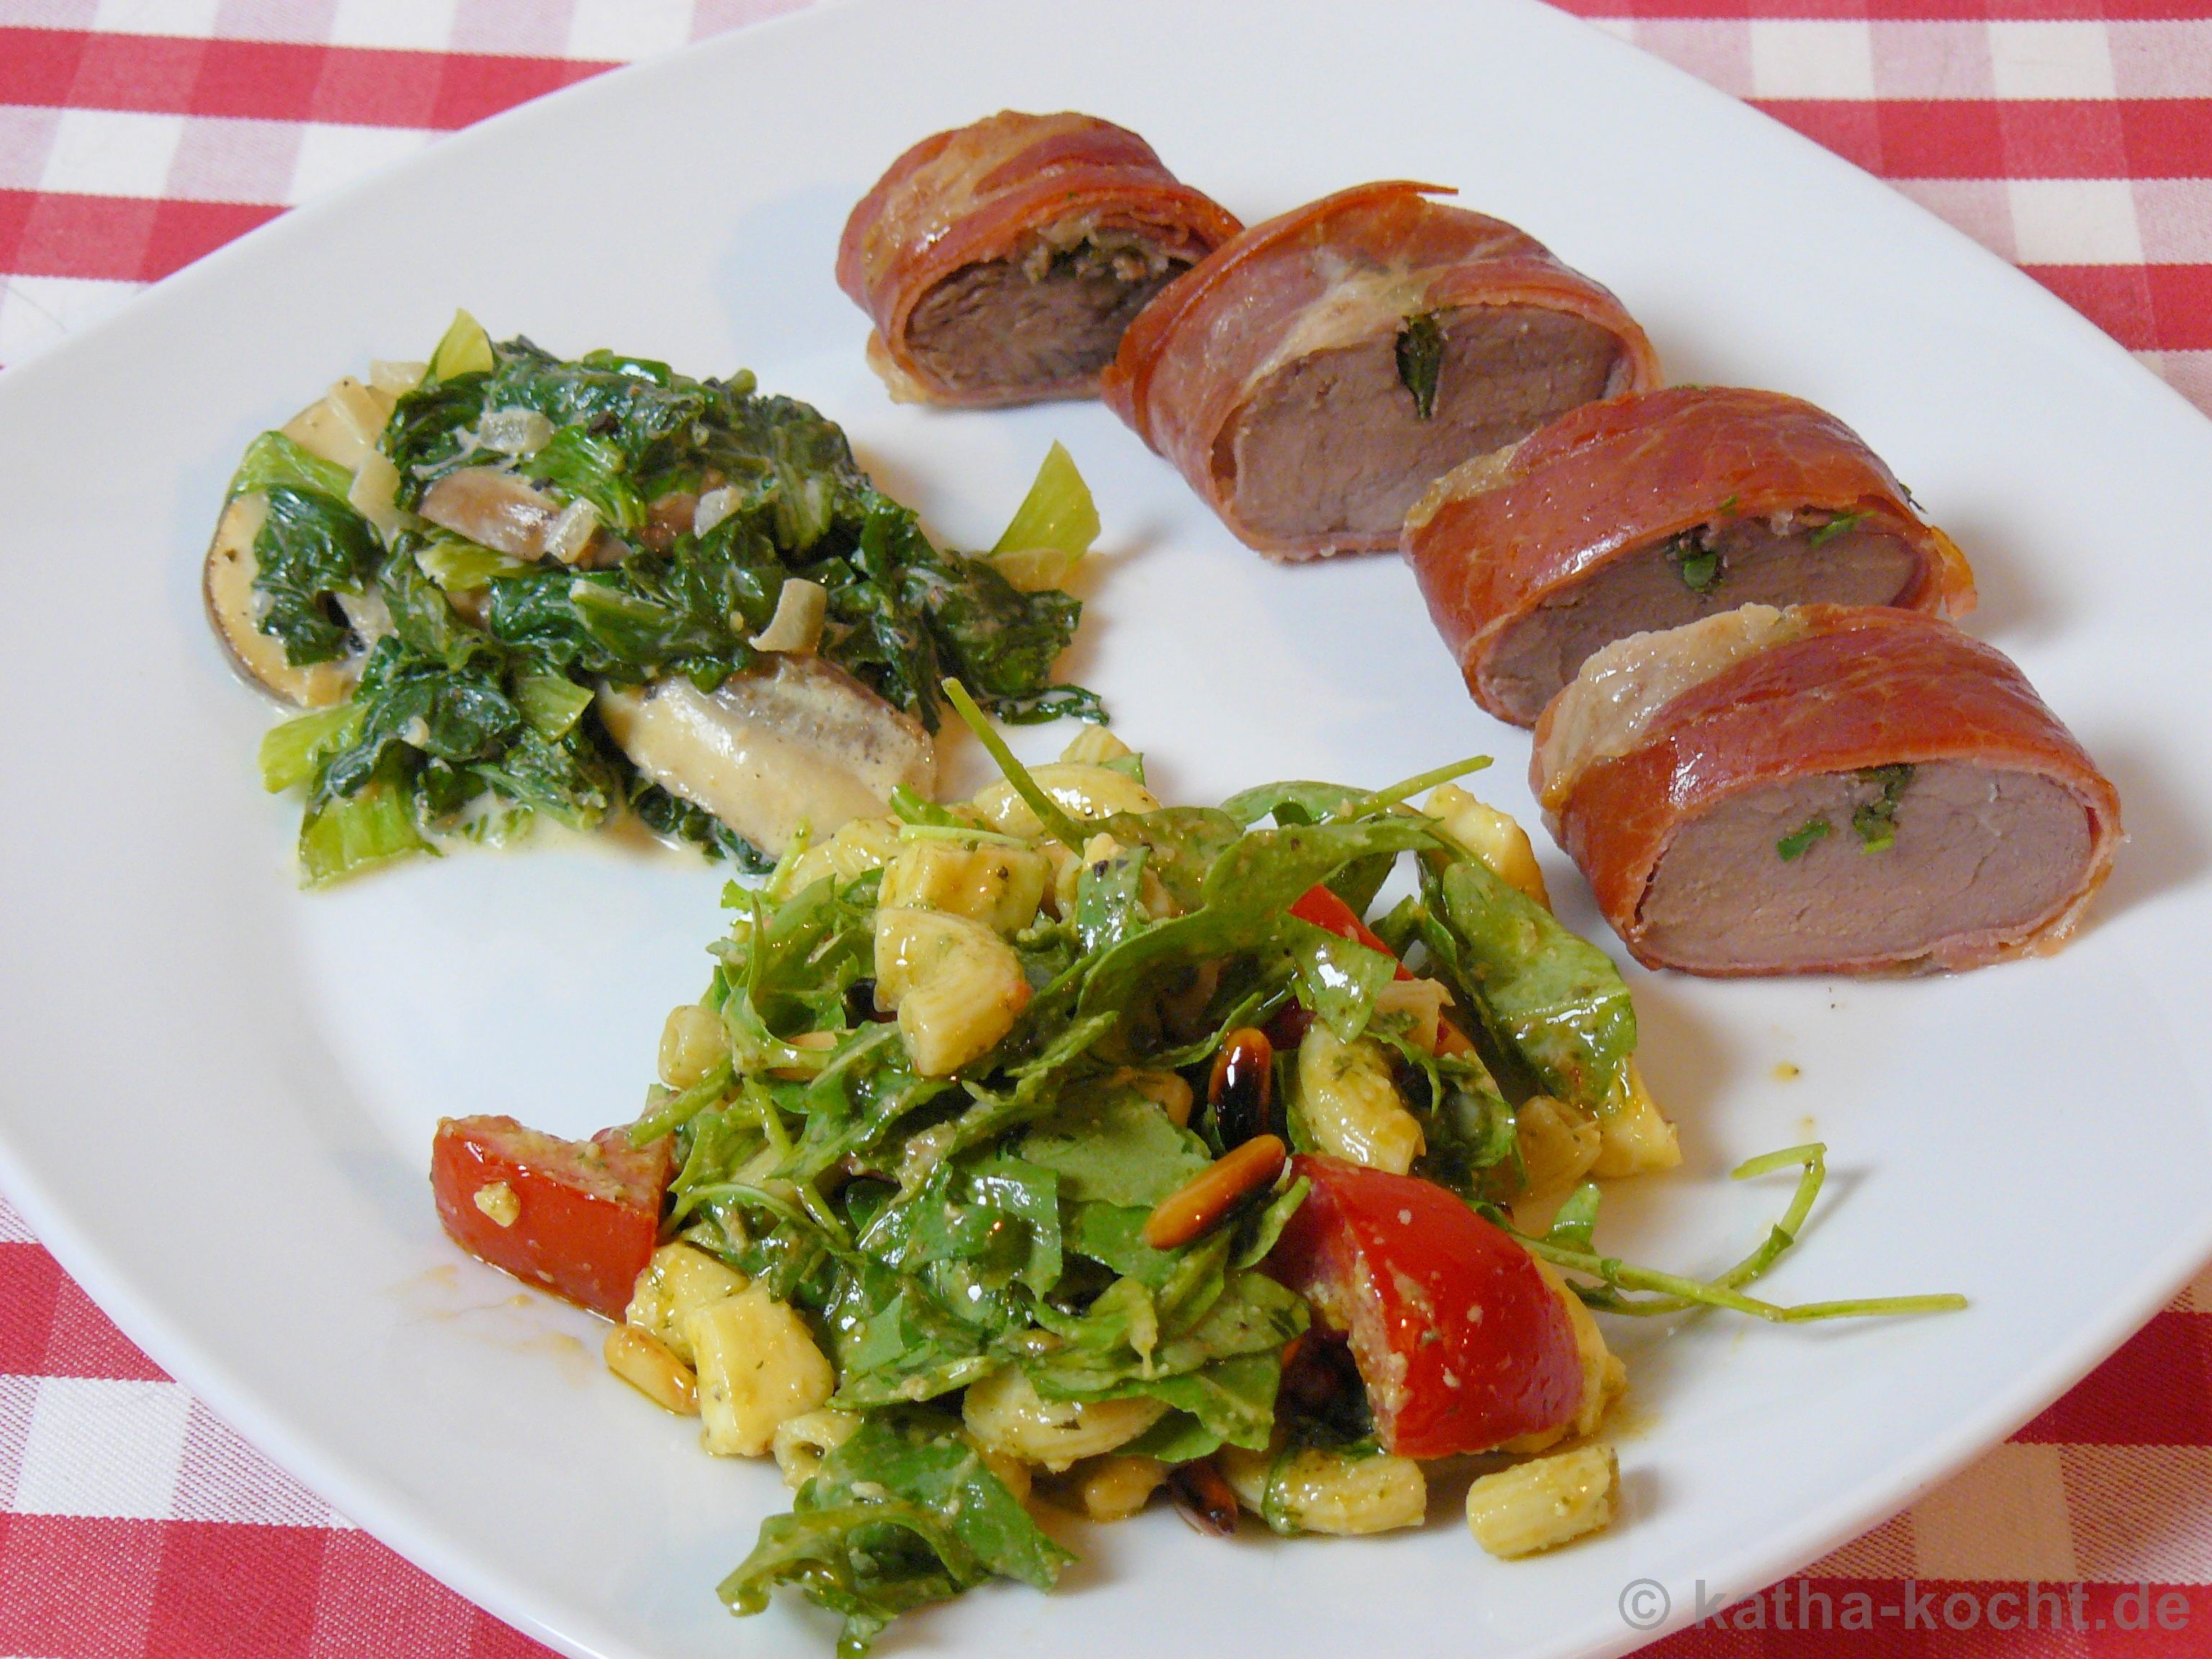 Ibericofilet & Estragon in Serranoschinken mit sahniger Mangold-Pilzpfanne und Salat